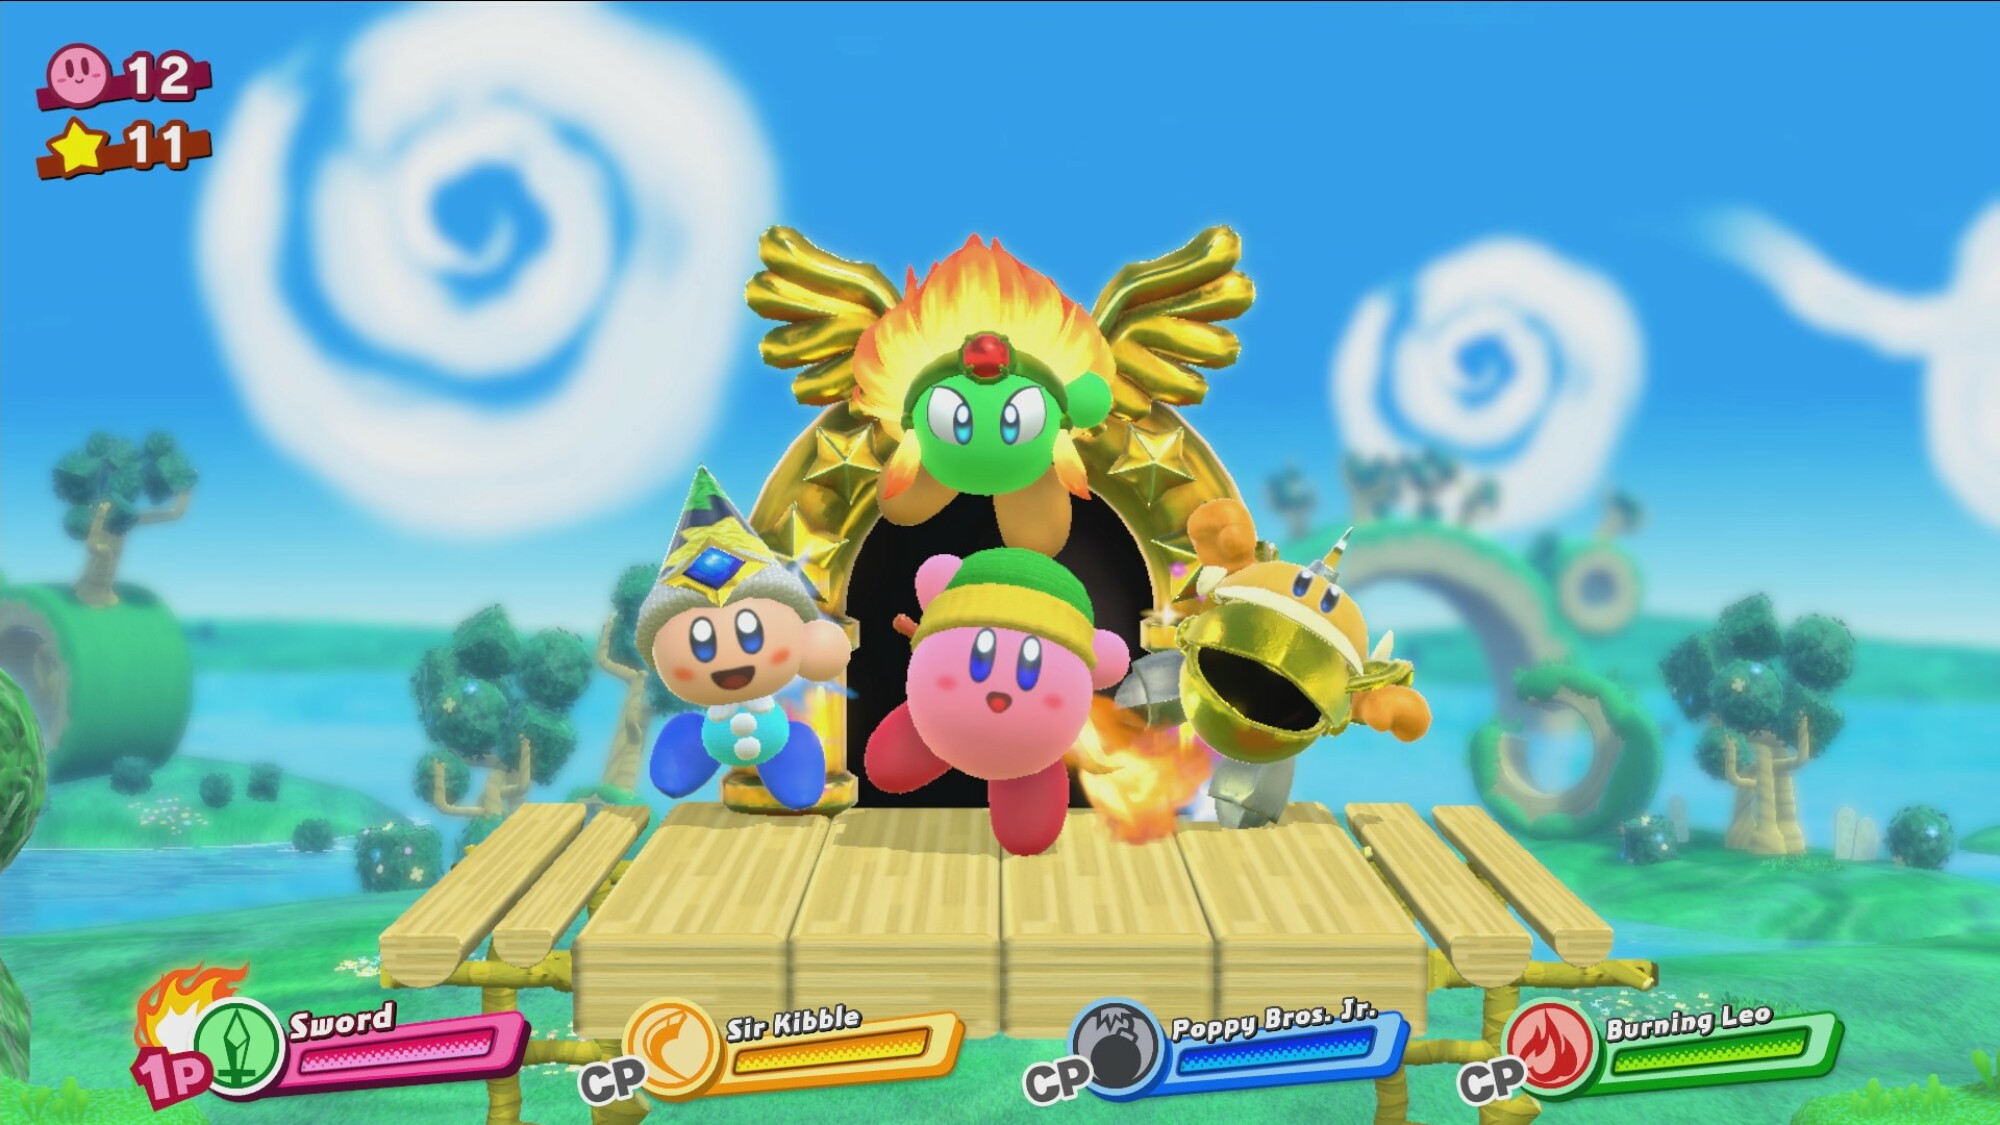 capture d'écran du jeu montrant le personnage principal Kirby avec 2 autres personnages sur une plateforme